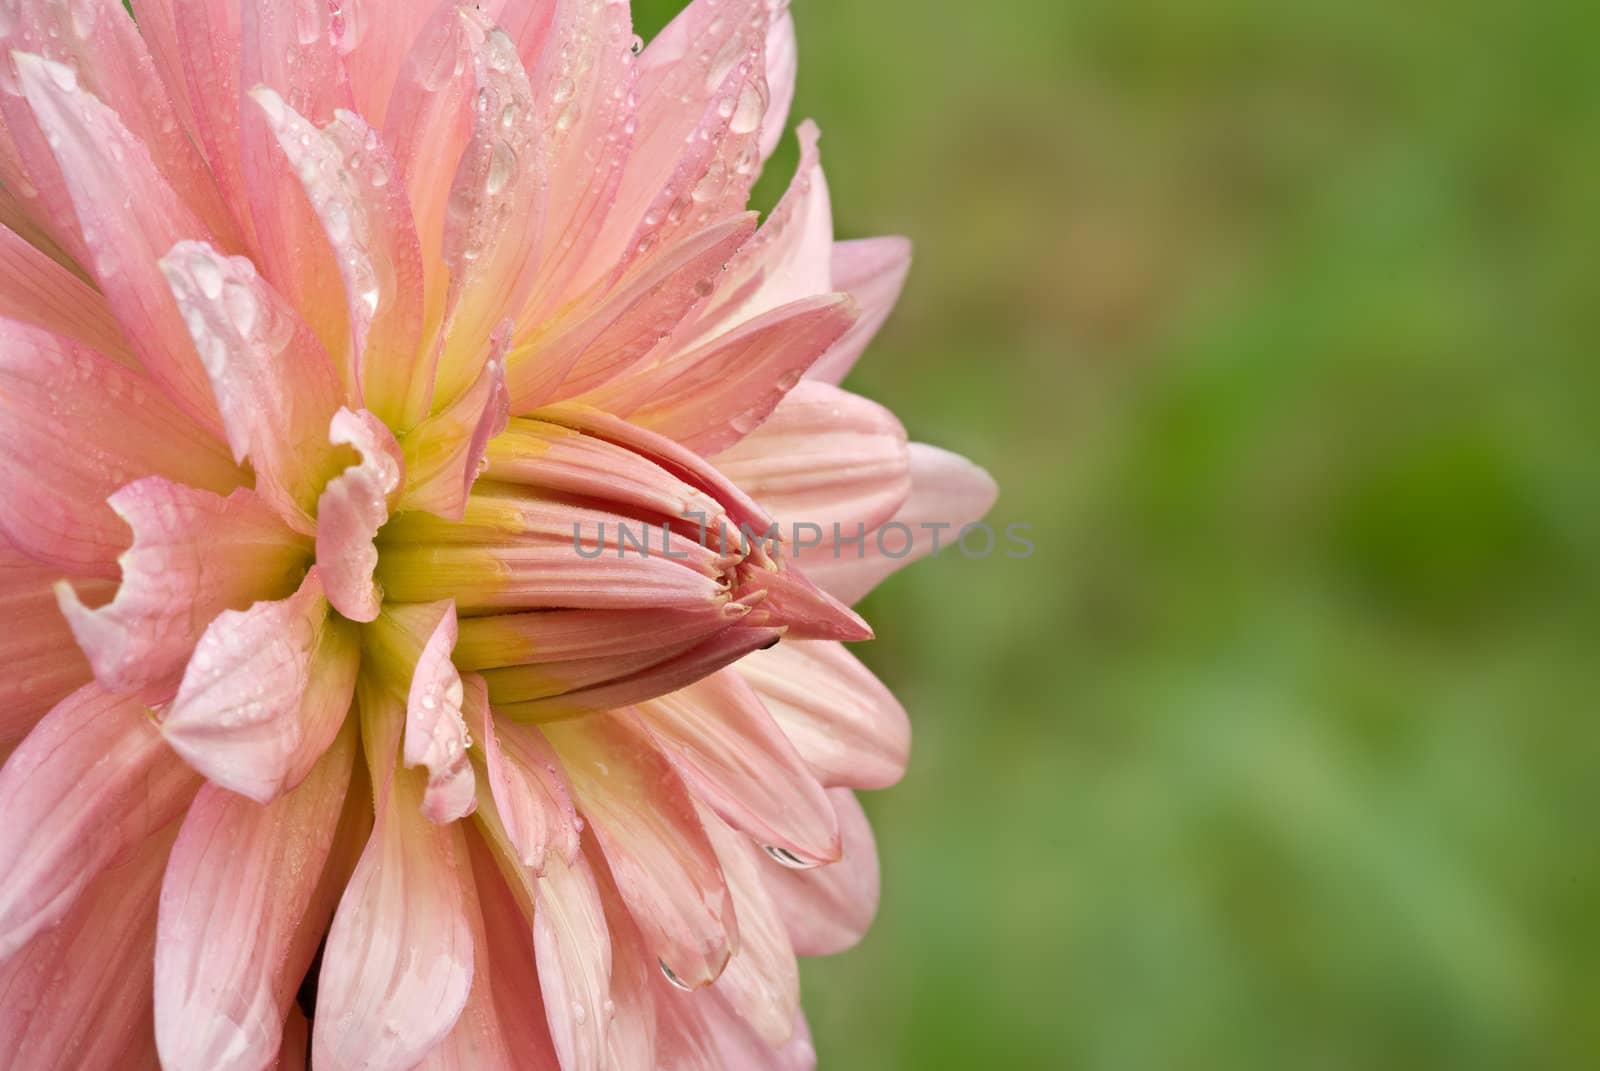 crysanthemum flower by clearviewstock